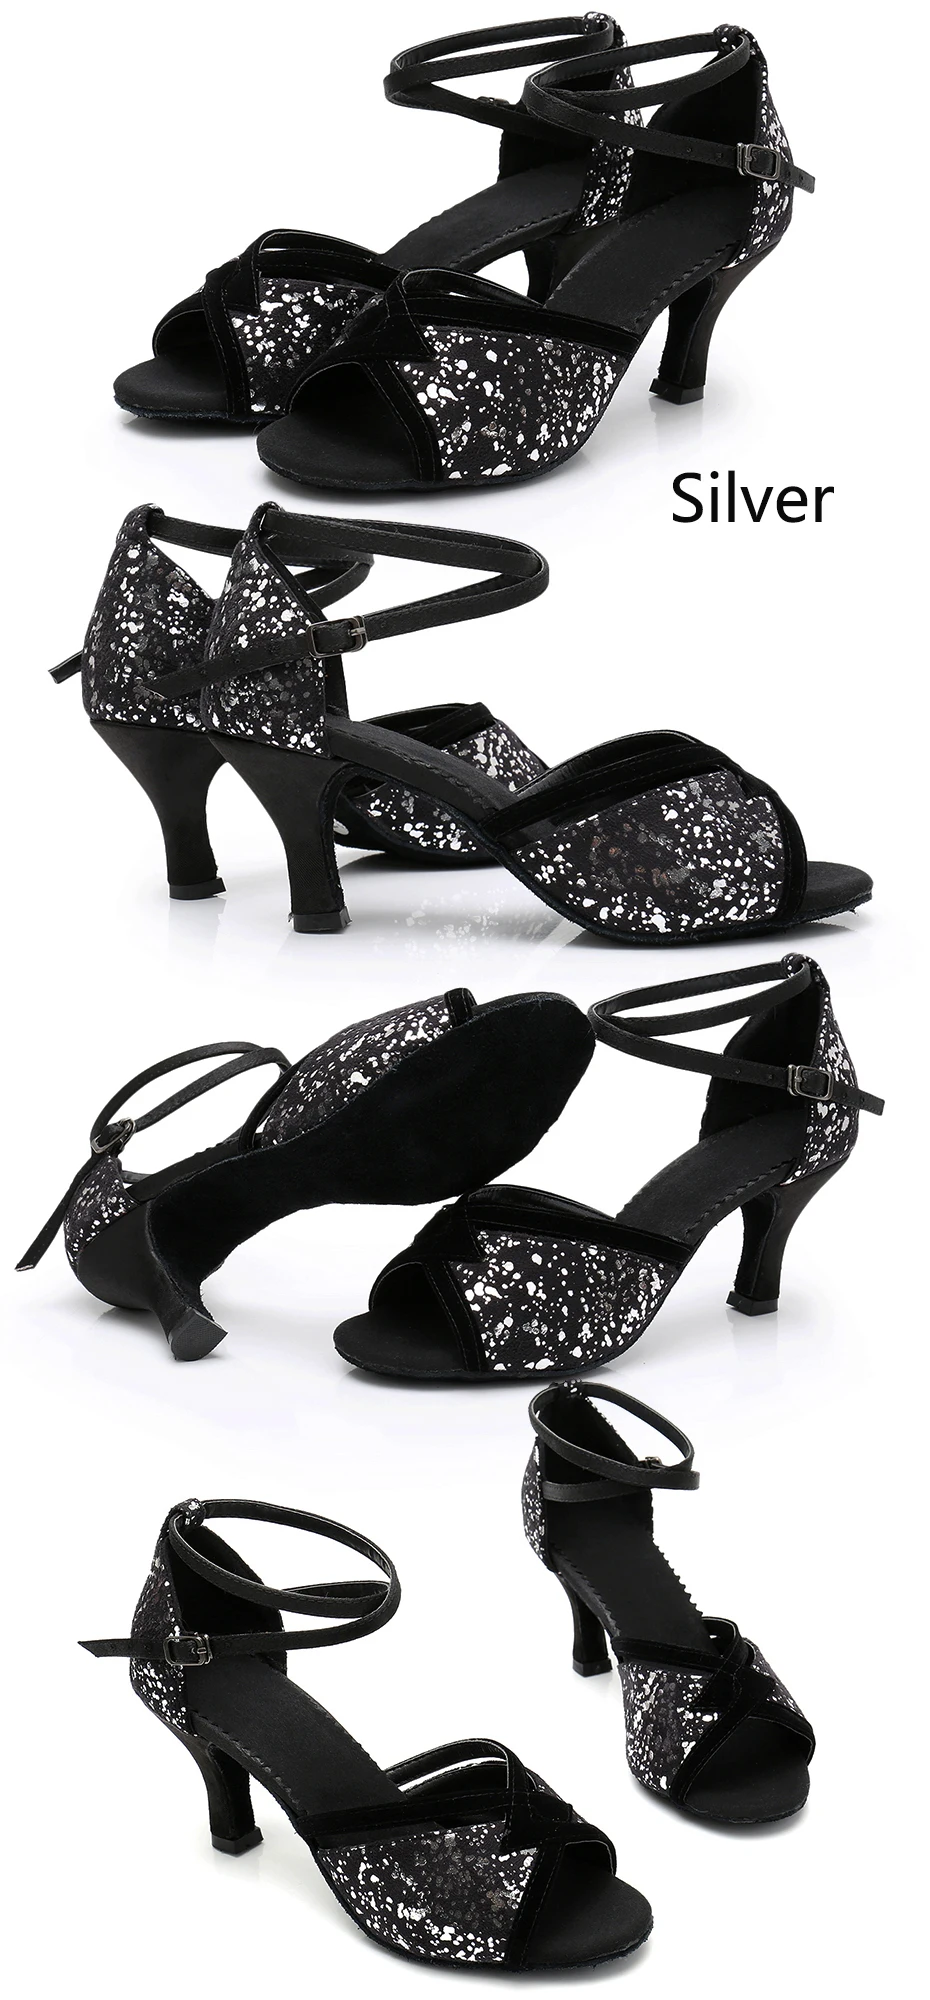 Alharbi Танго, латина Обувь для танцев для девочек Для женщин Бальные мягкая обувь на высоком каблуке туфли на высоком каблуке «цветок Танцы обувь дамы Выделите танцевальная обуь